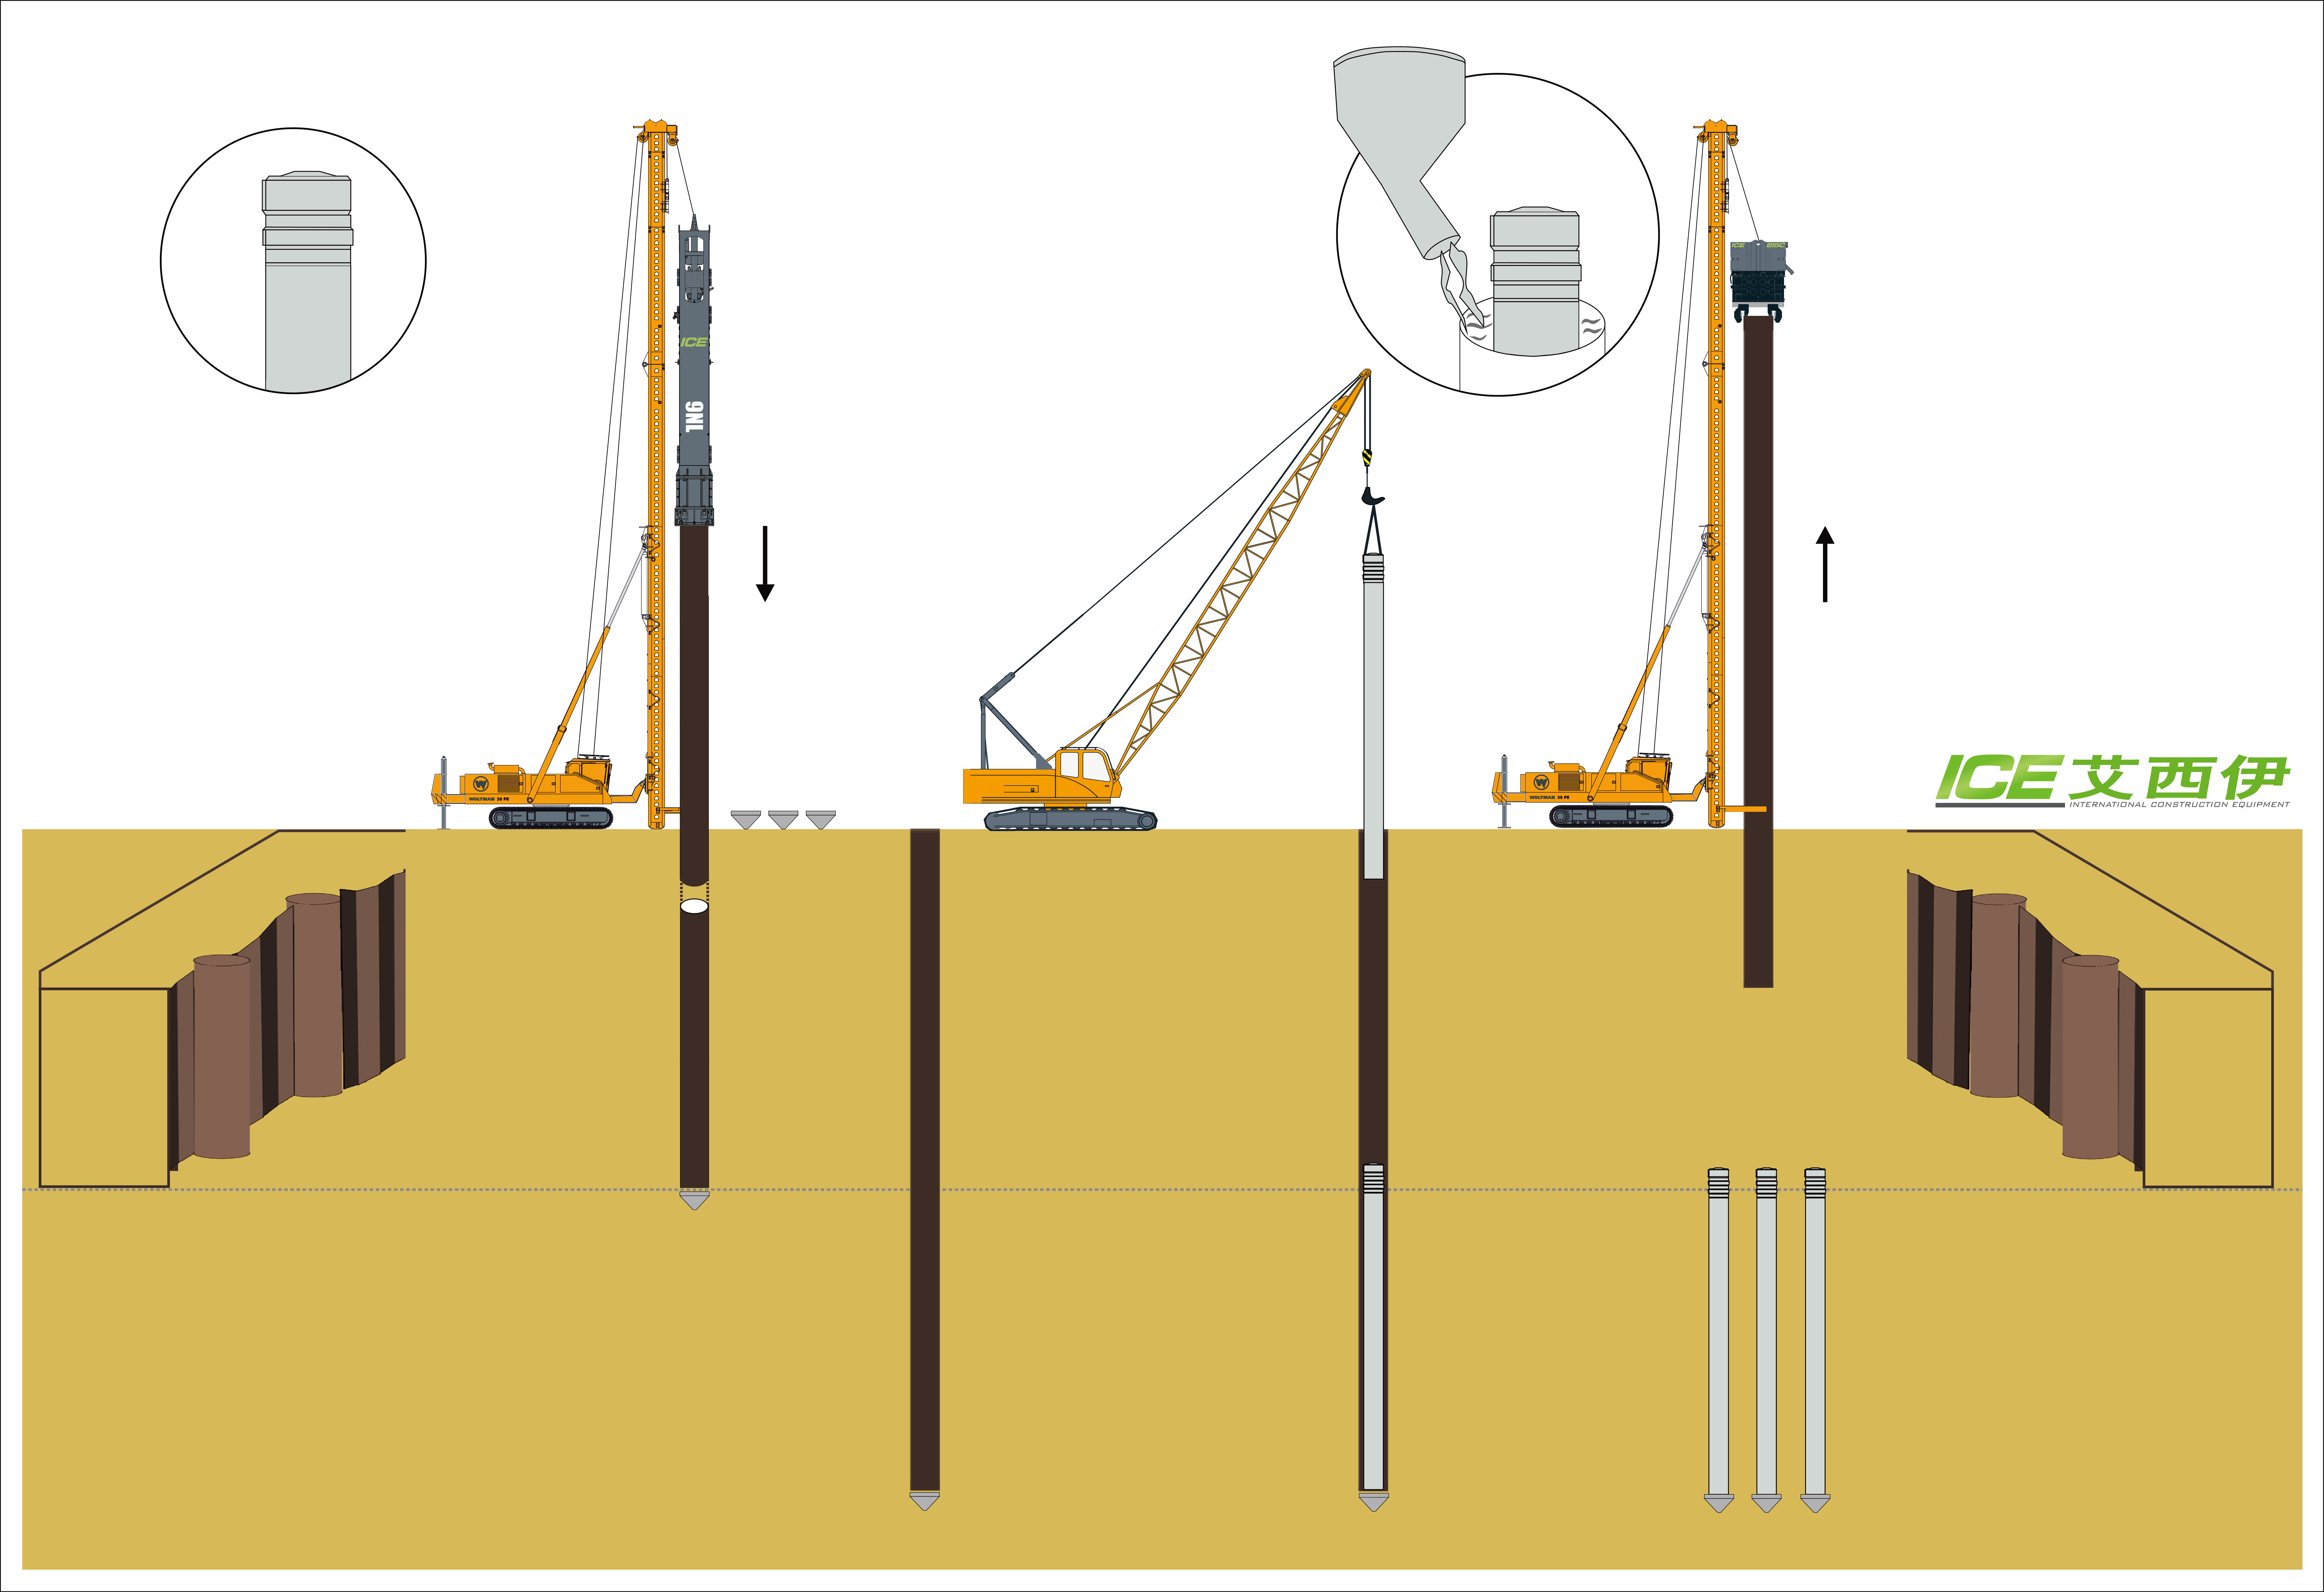 混凝土预制桩预埋工法之荷兰应用： 冲击振动组合法打桩 – 无需进行桩的顶部切除